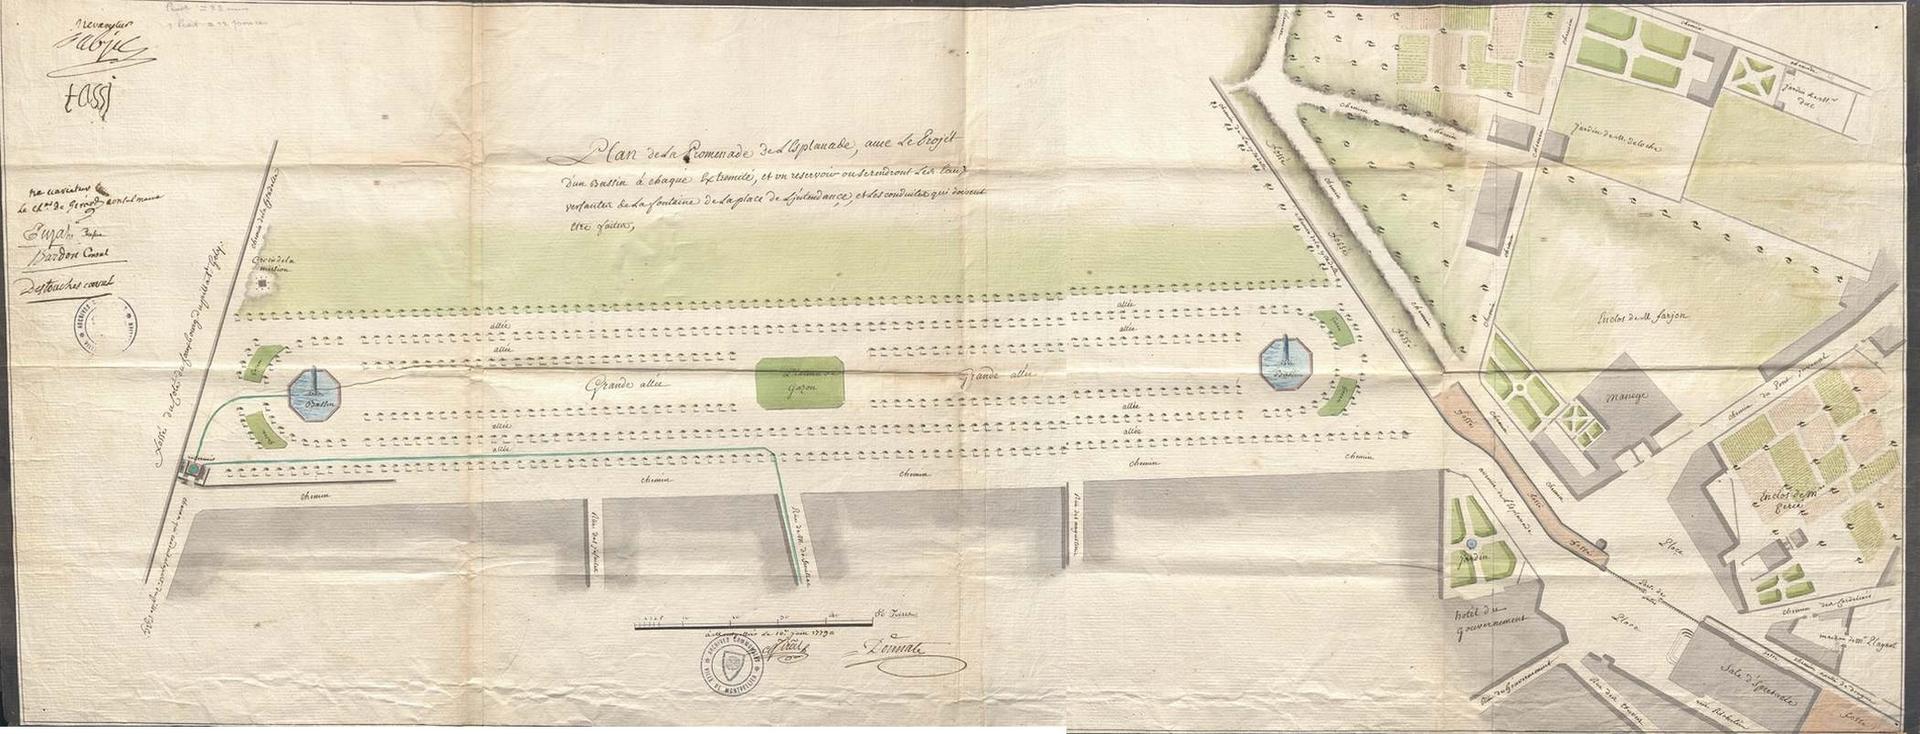 Plan projet construction de deux bassins et réservoir d'eau aux extrémités de l'Esplanade, signé Donnat, 1779. AMM, II553 c